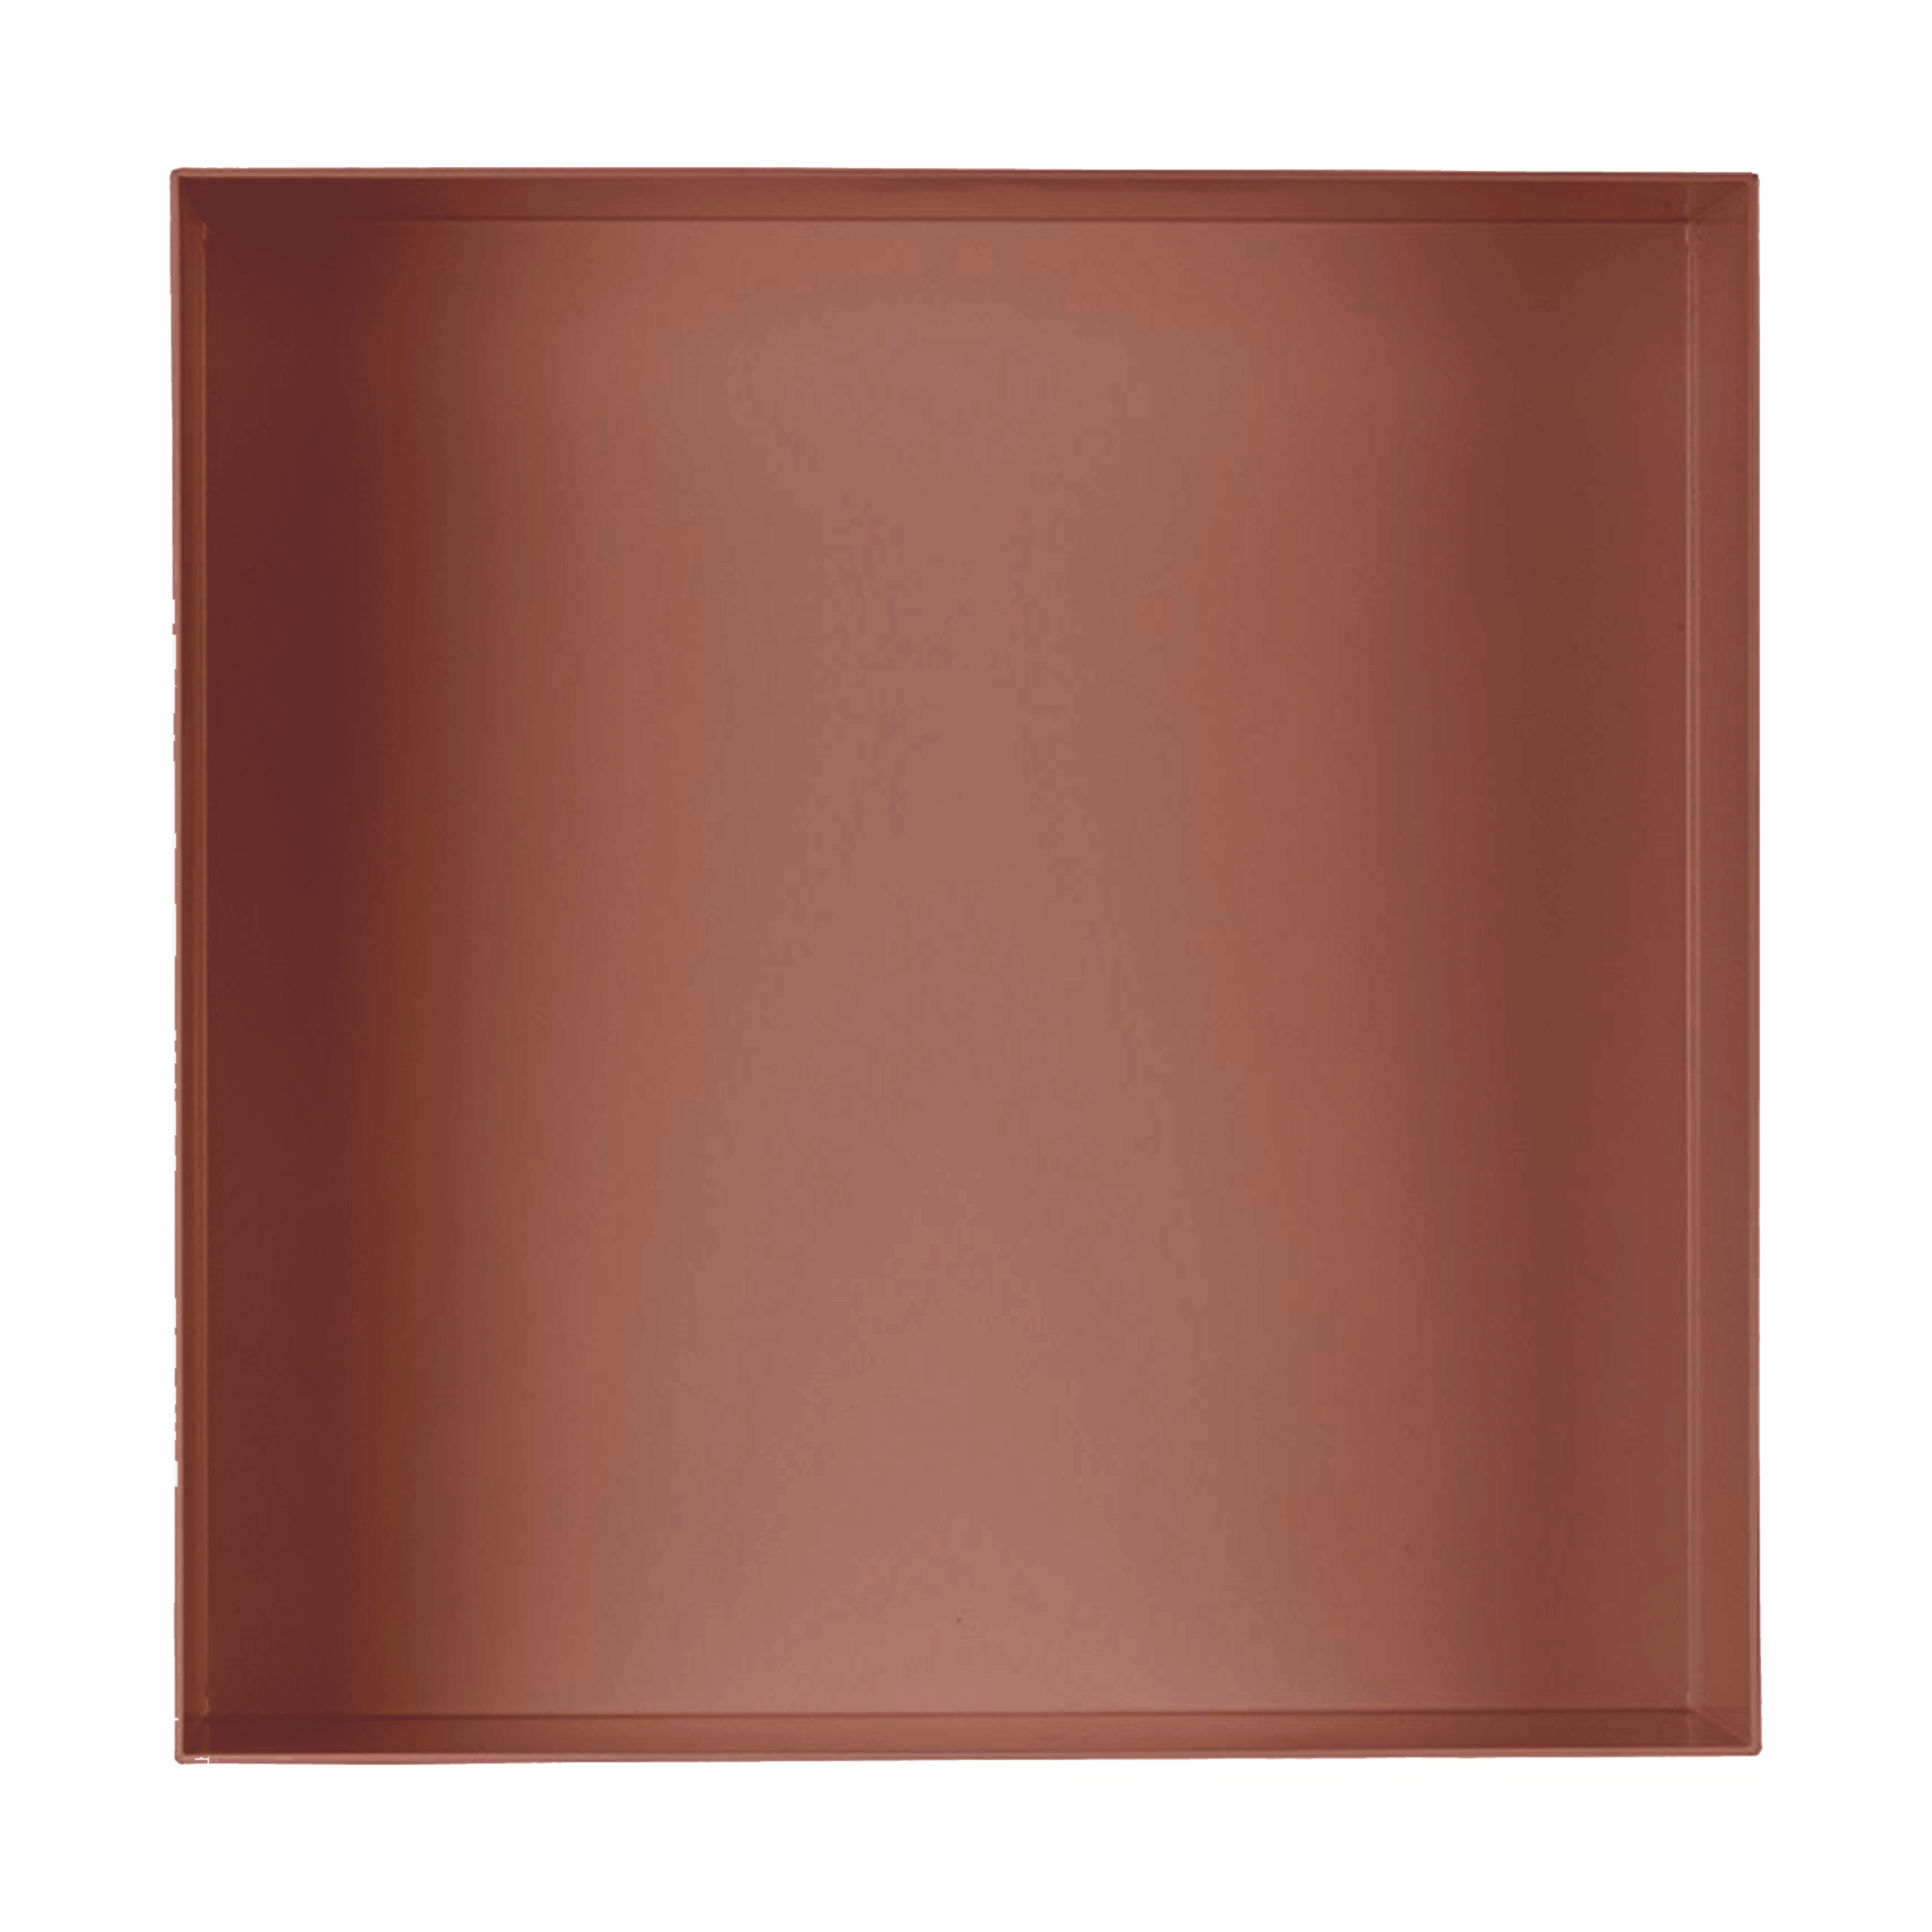 Valli Home – V-Box, Nicchia portaoggetti in Metallo smaltato color Rosso KK114, Misura 40X40 P. 10 cm – V-BOX.MLLO.40X40.114